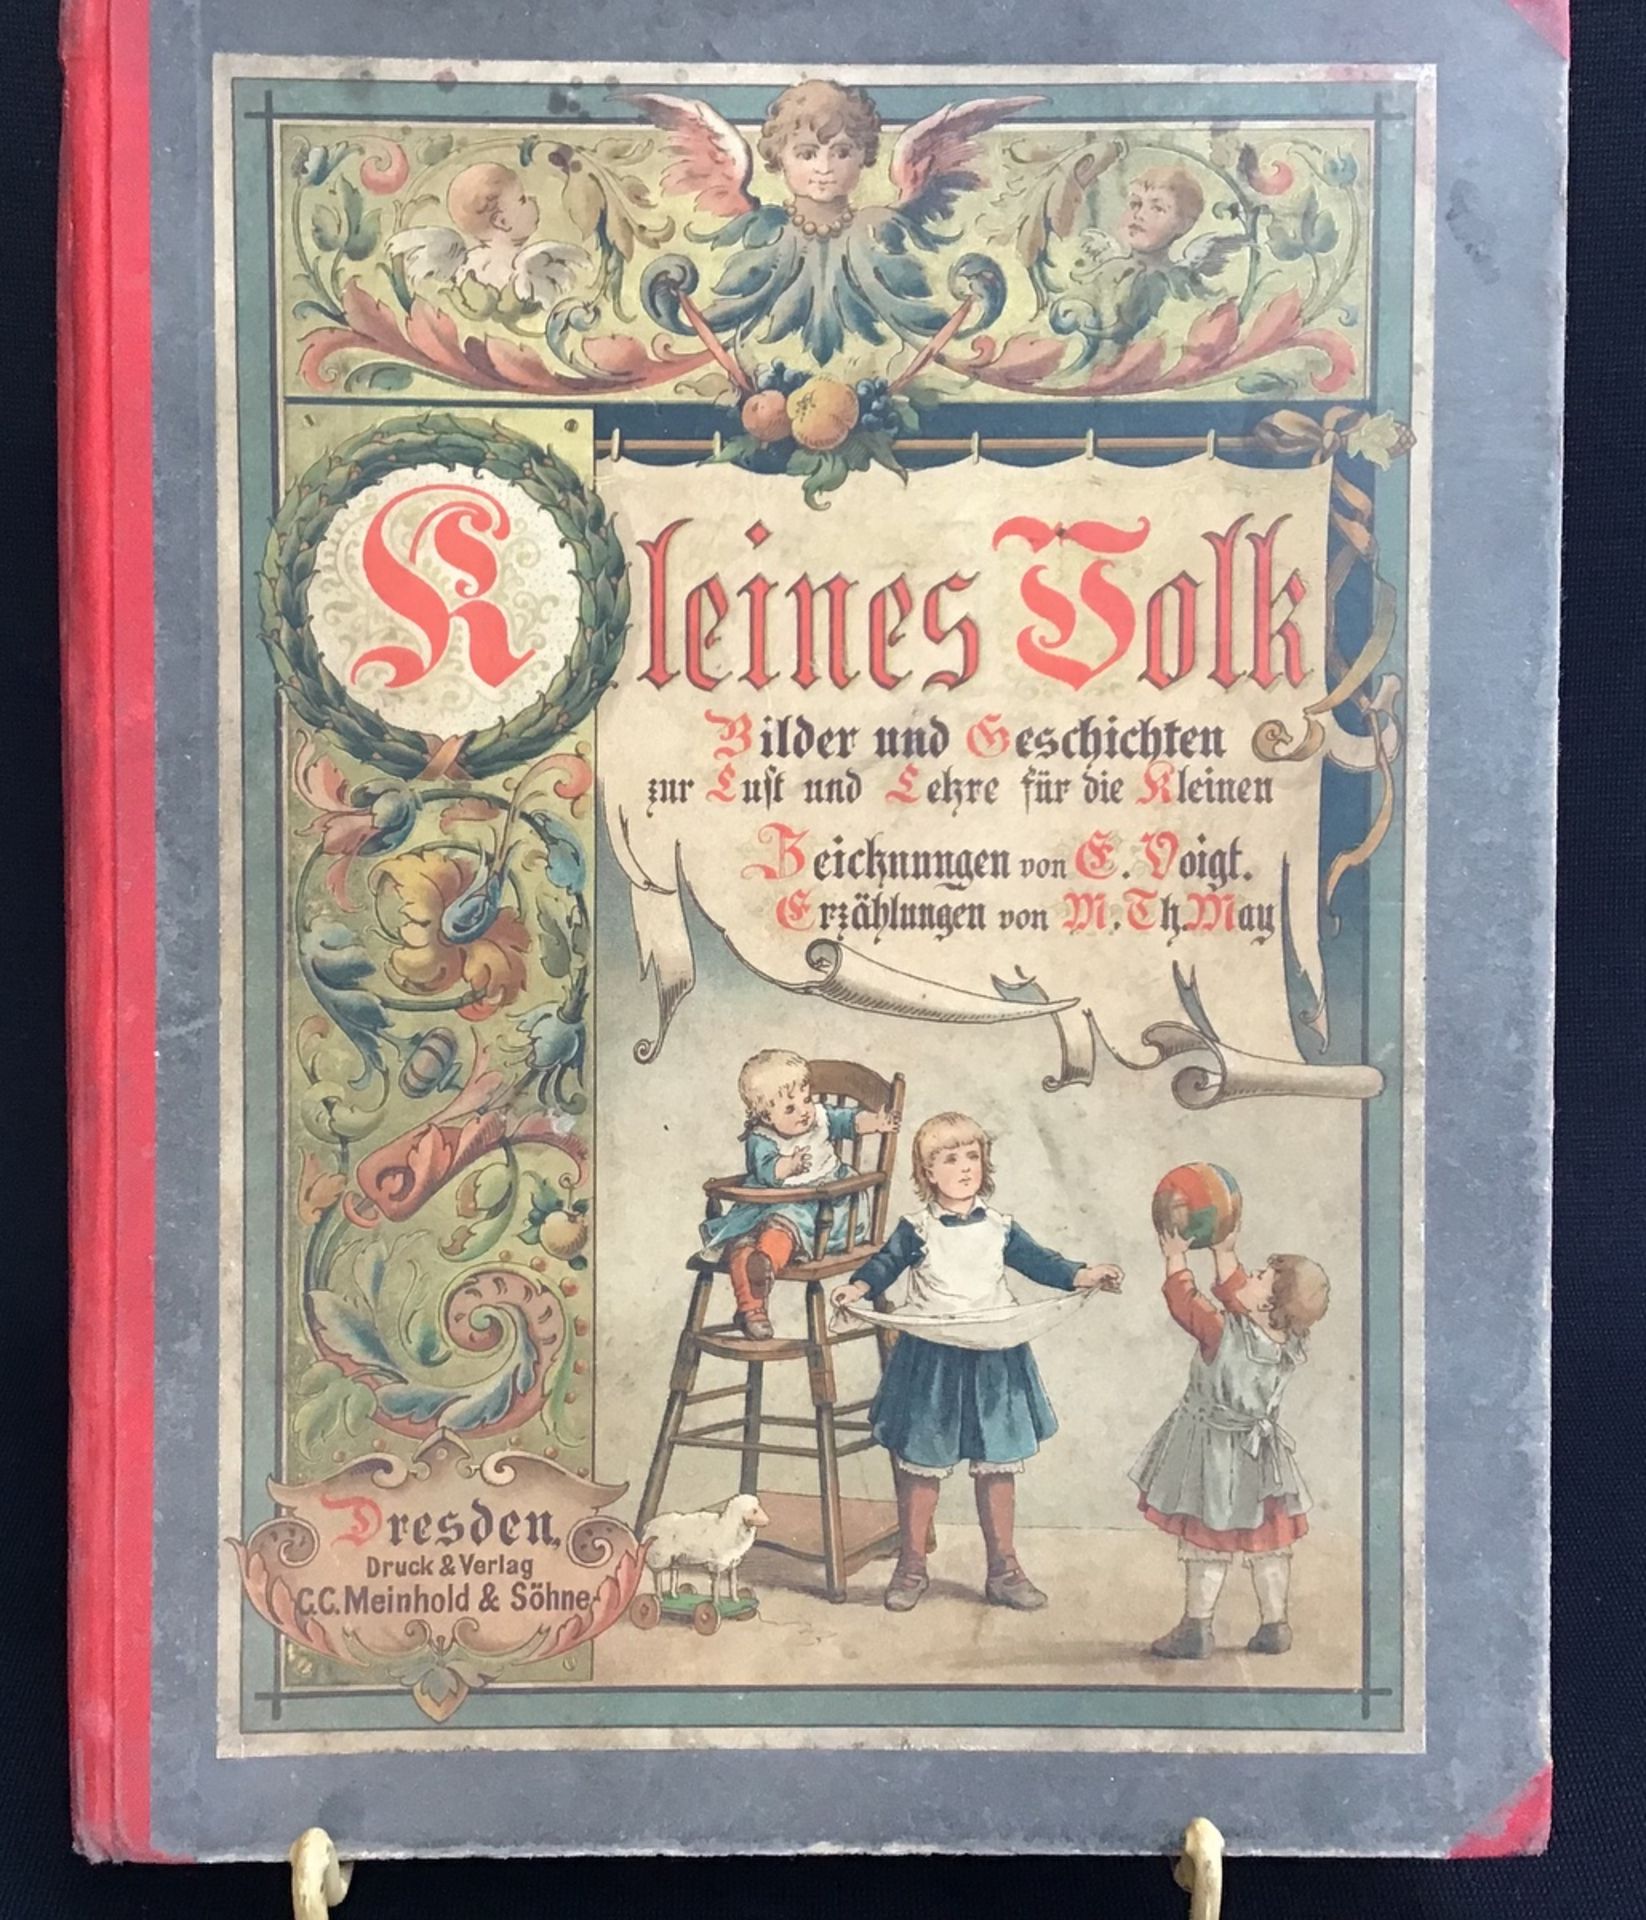 "Kleines Volk" Erzählungen von M.Th. May, Zeichnungen von G. Voigt, Verlag C.C. Meinhold u. Söhne